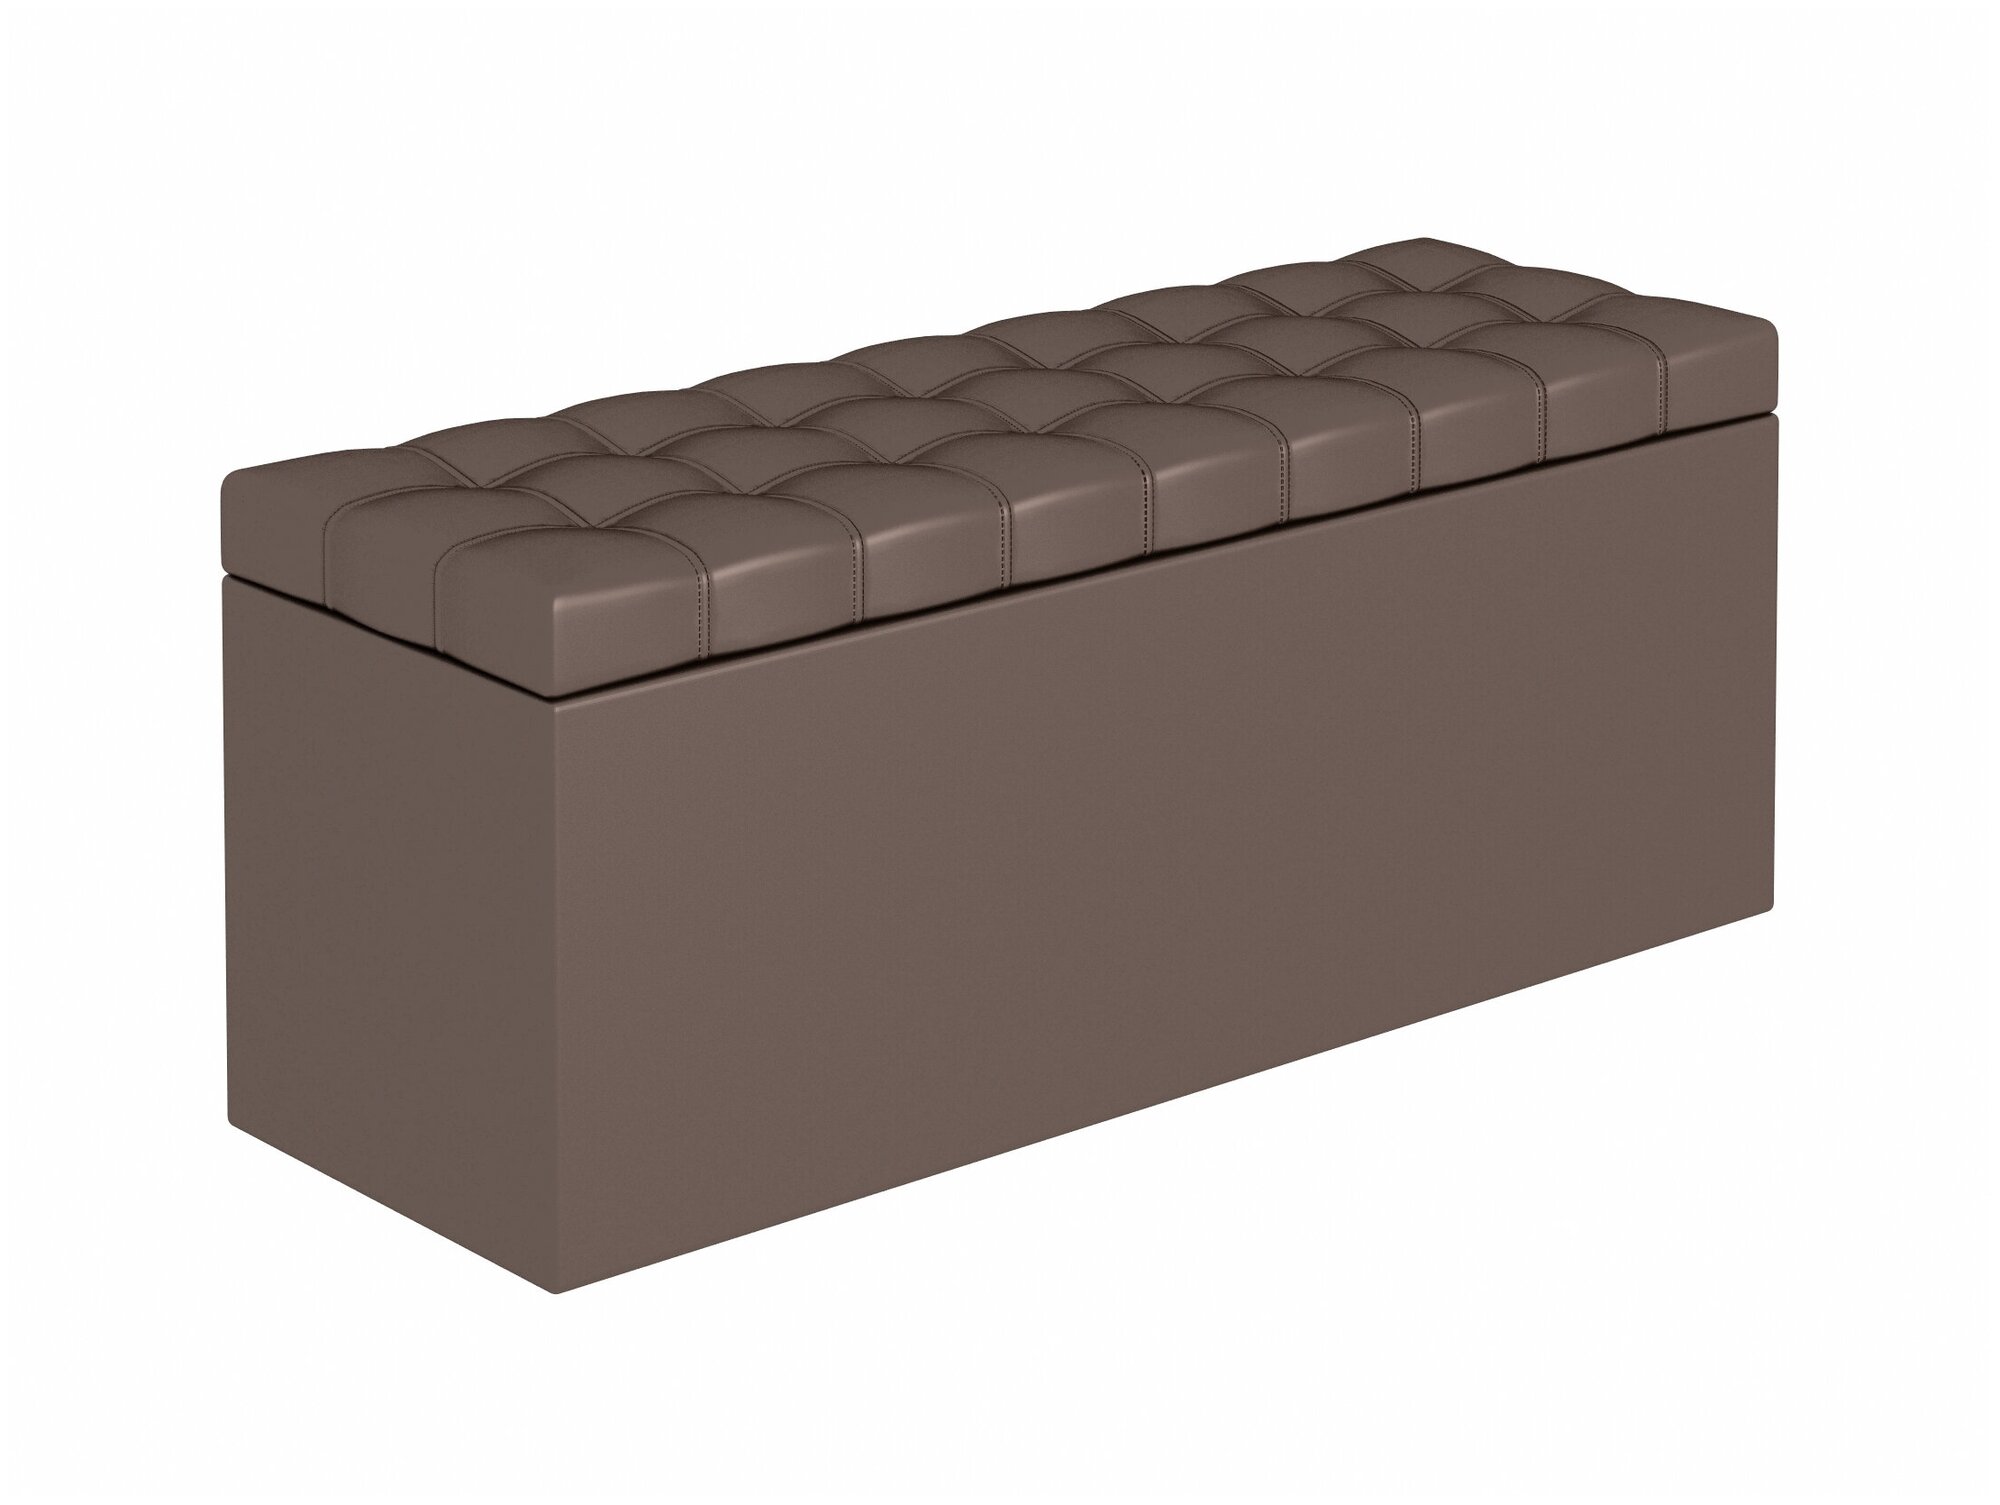 Пуфик БонМебель Квадро 3, коричневый, 112х36х44, пуф с ящиком для хранения, экокожа, пуфик в прихожую, мебель